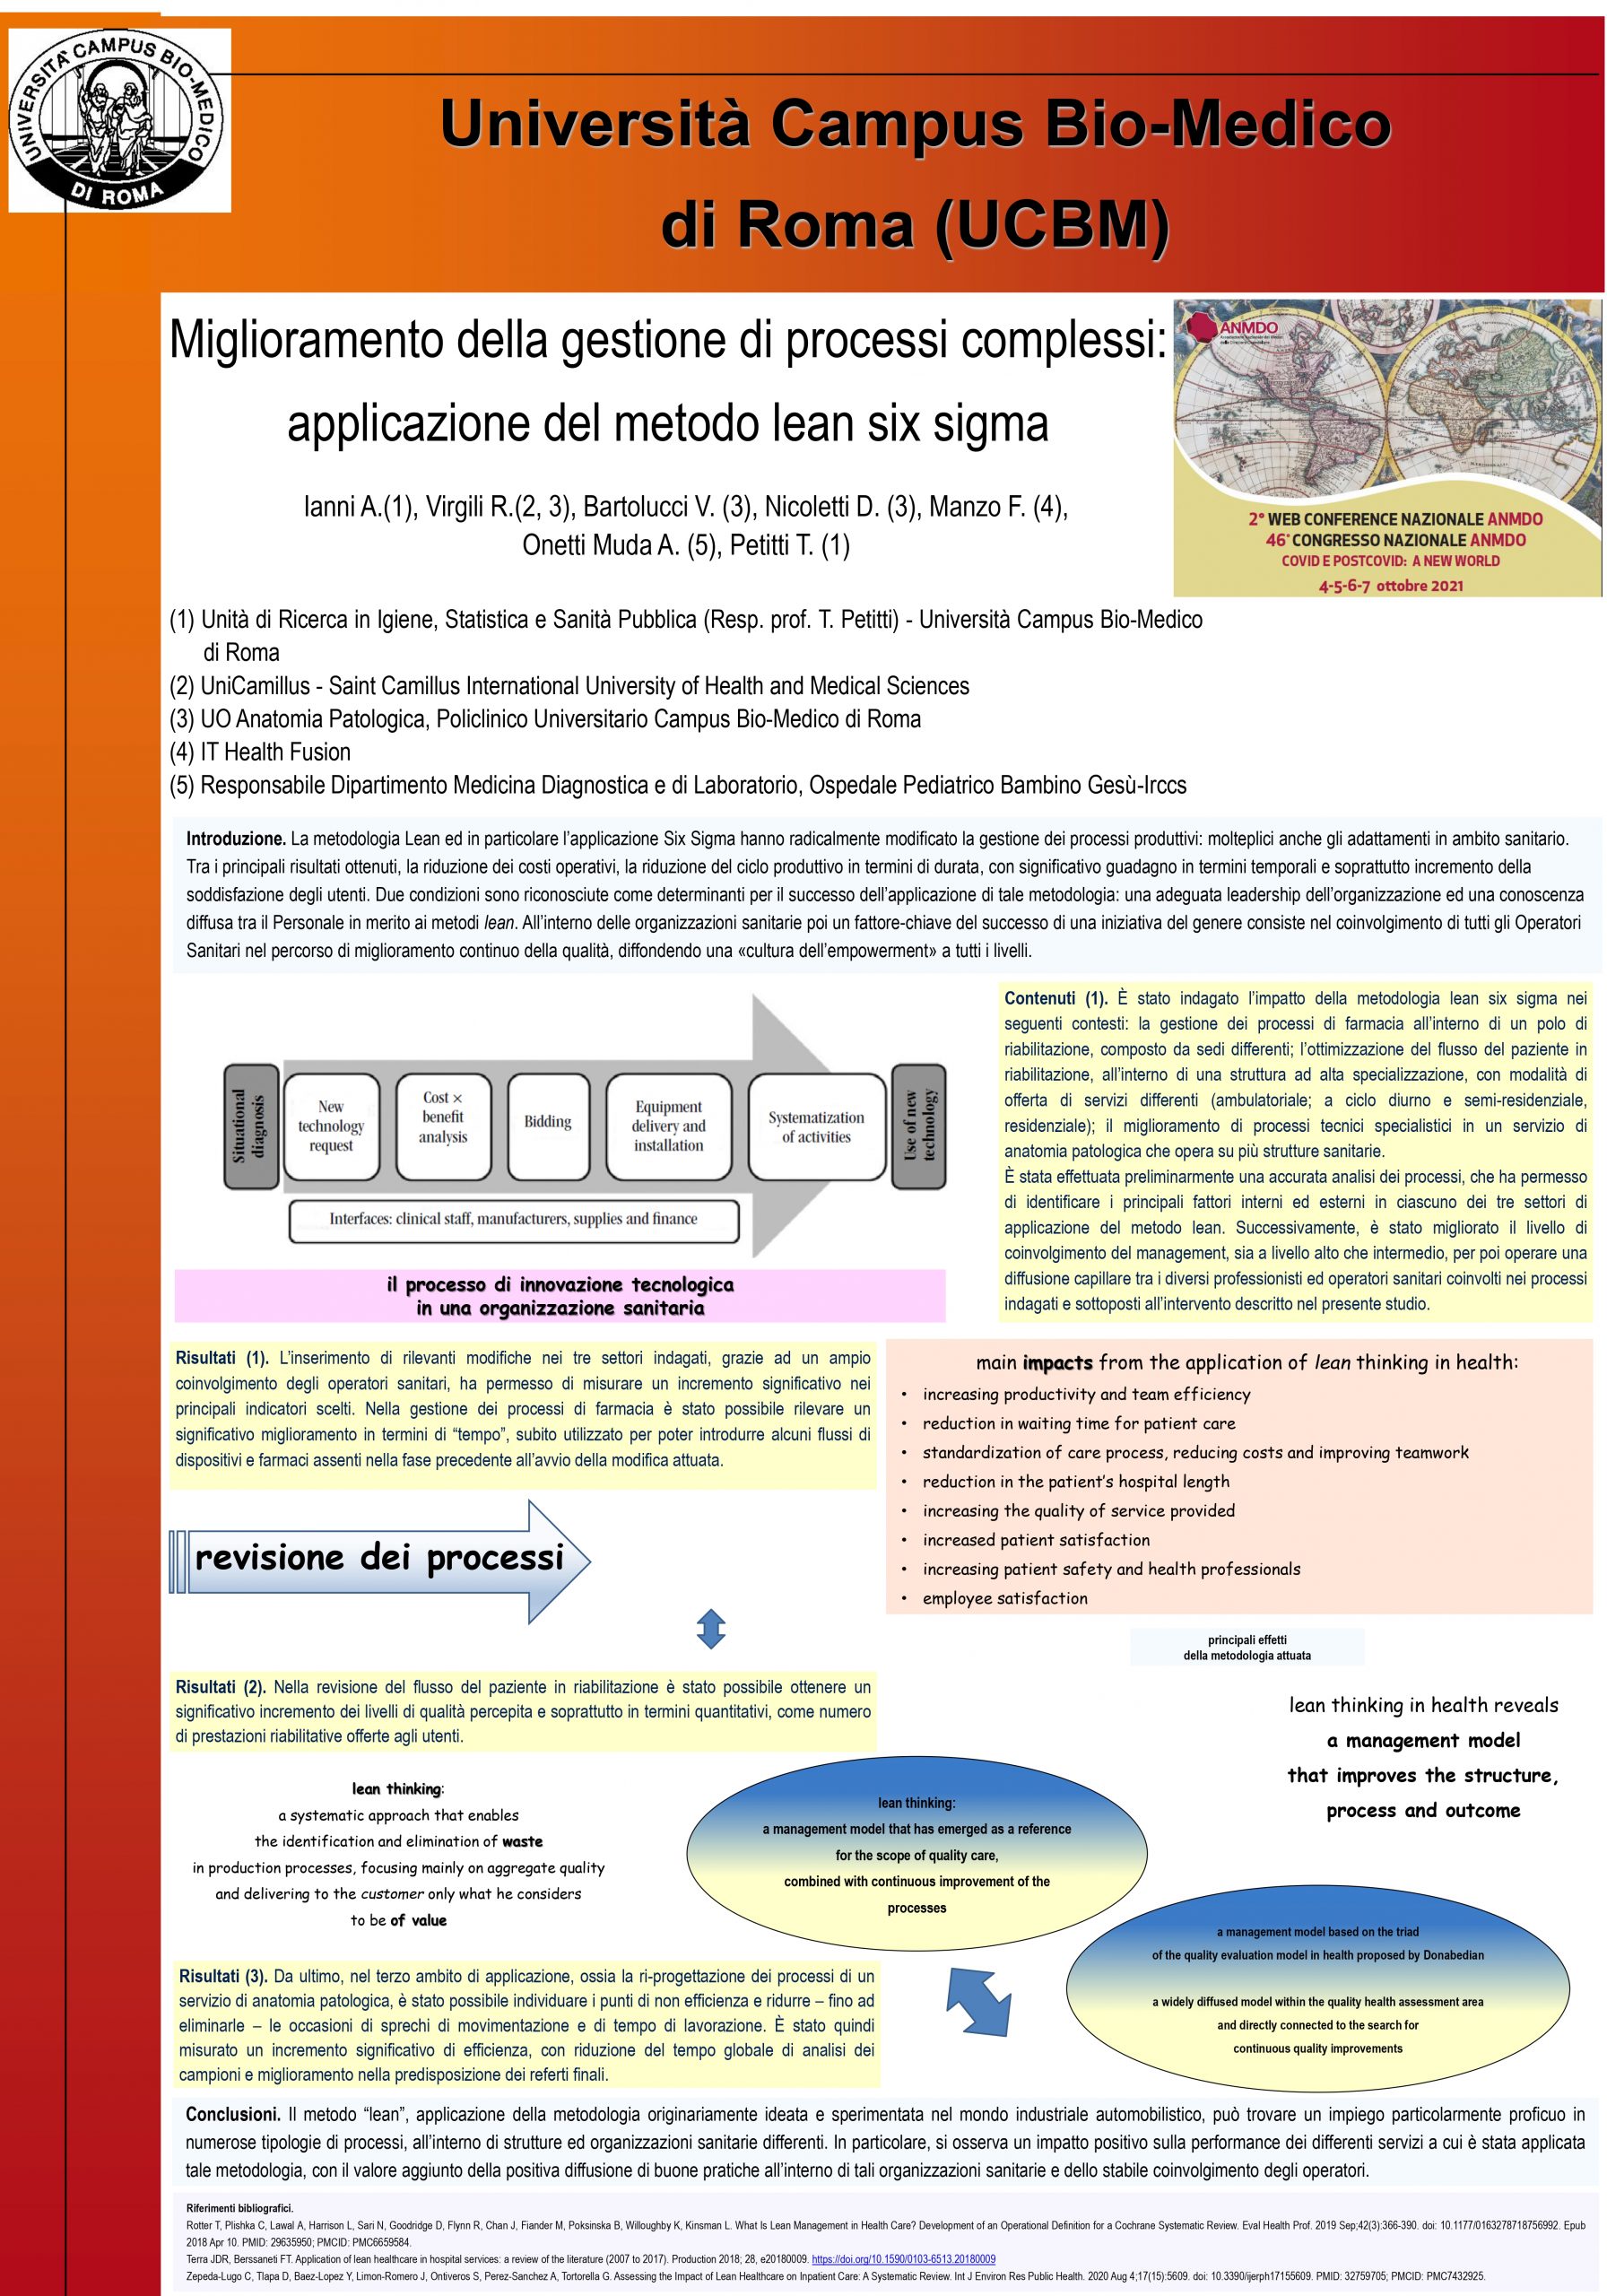 Ianni – Miglioramento della gestione di processi complessi:  applicazione del metodo lean six sigma